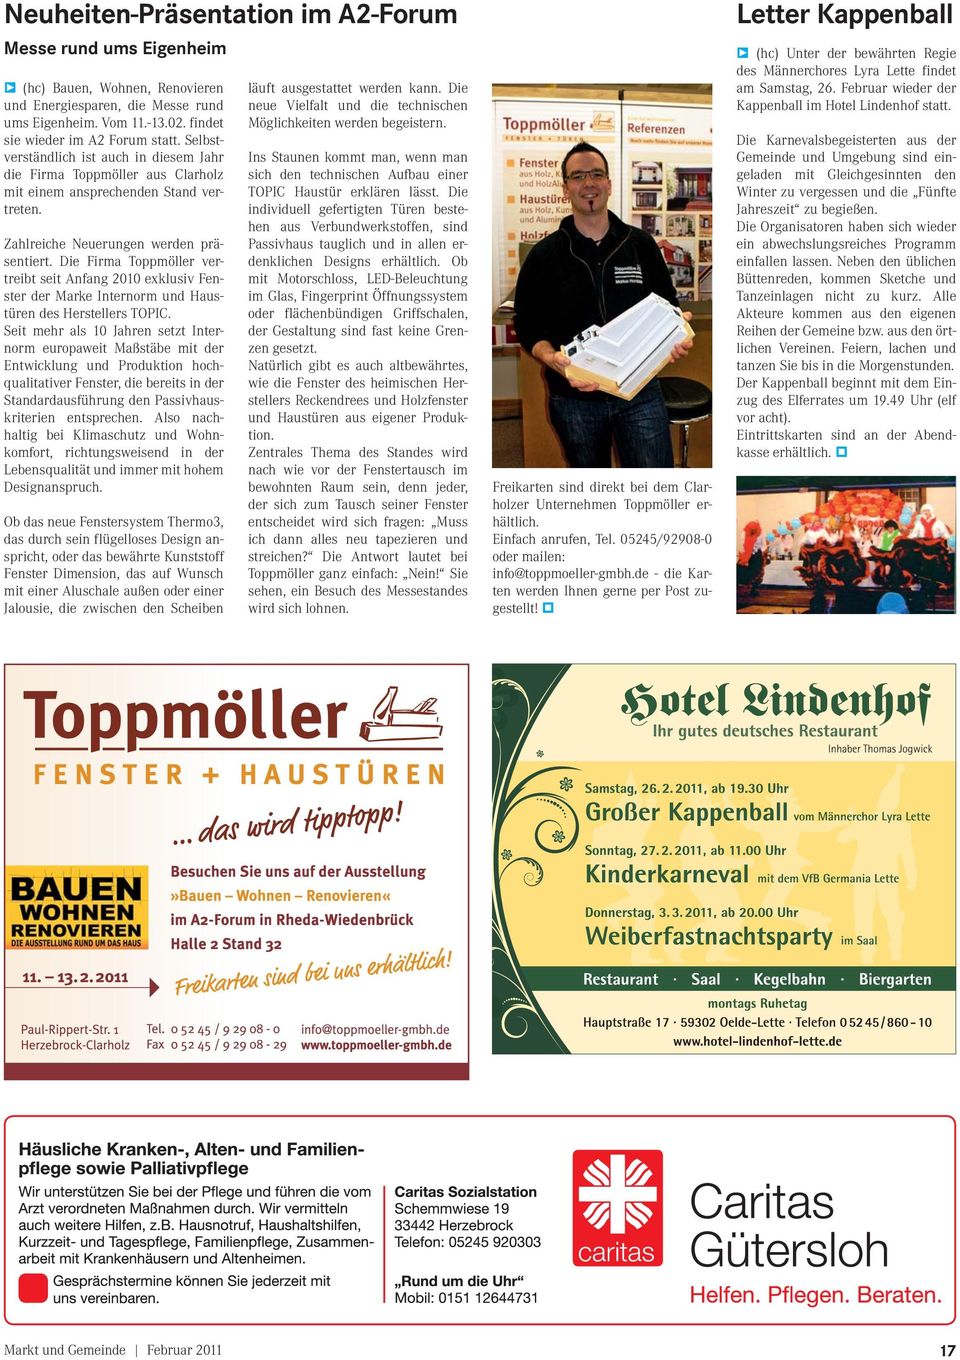 Die Firma Toppmöller vertreibt seit Anfang 2010 exklusiv Fenster der Marke Internorm und Haustüren des Herstellers TOPIC.